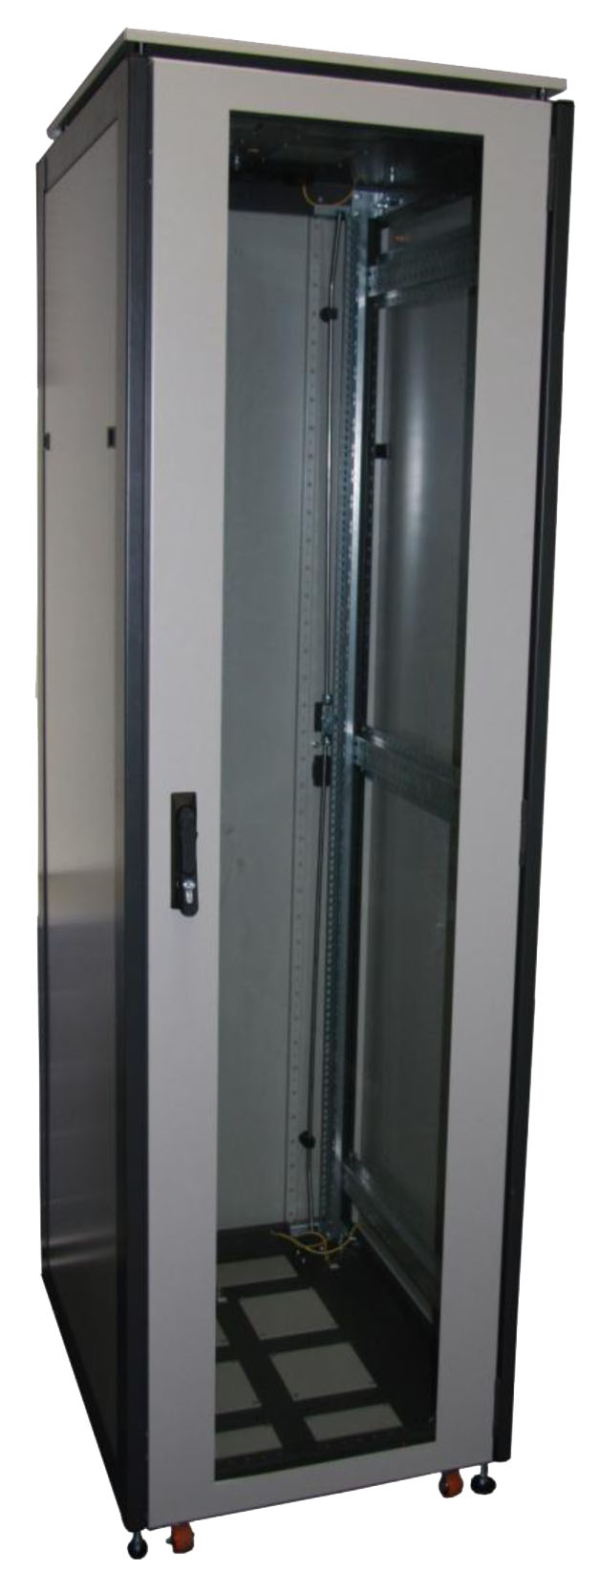 ССКТБ ТОМАСС ШТК-6612Э-04 - шкаф телекоммуникационный 19", 24U, 600х600х1200 мм, с двумя металлическими дверьми